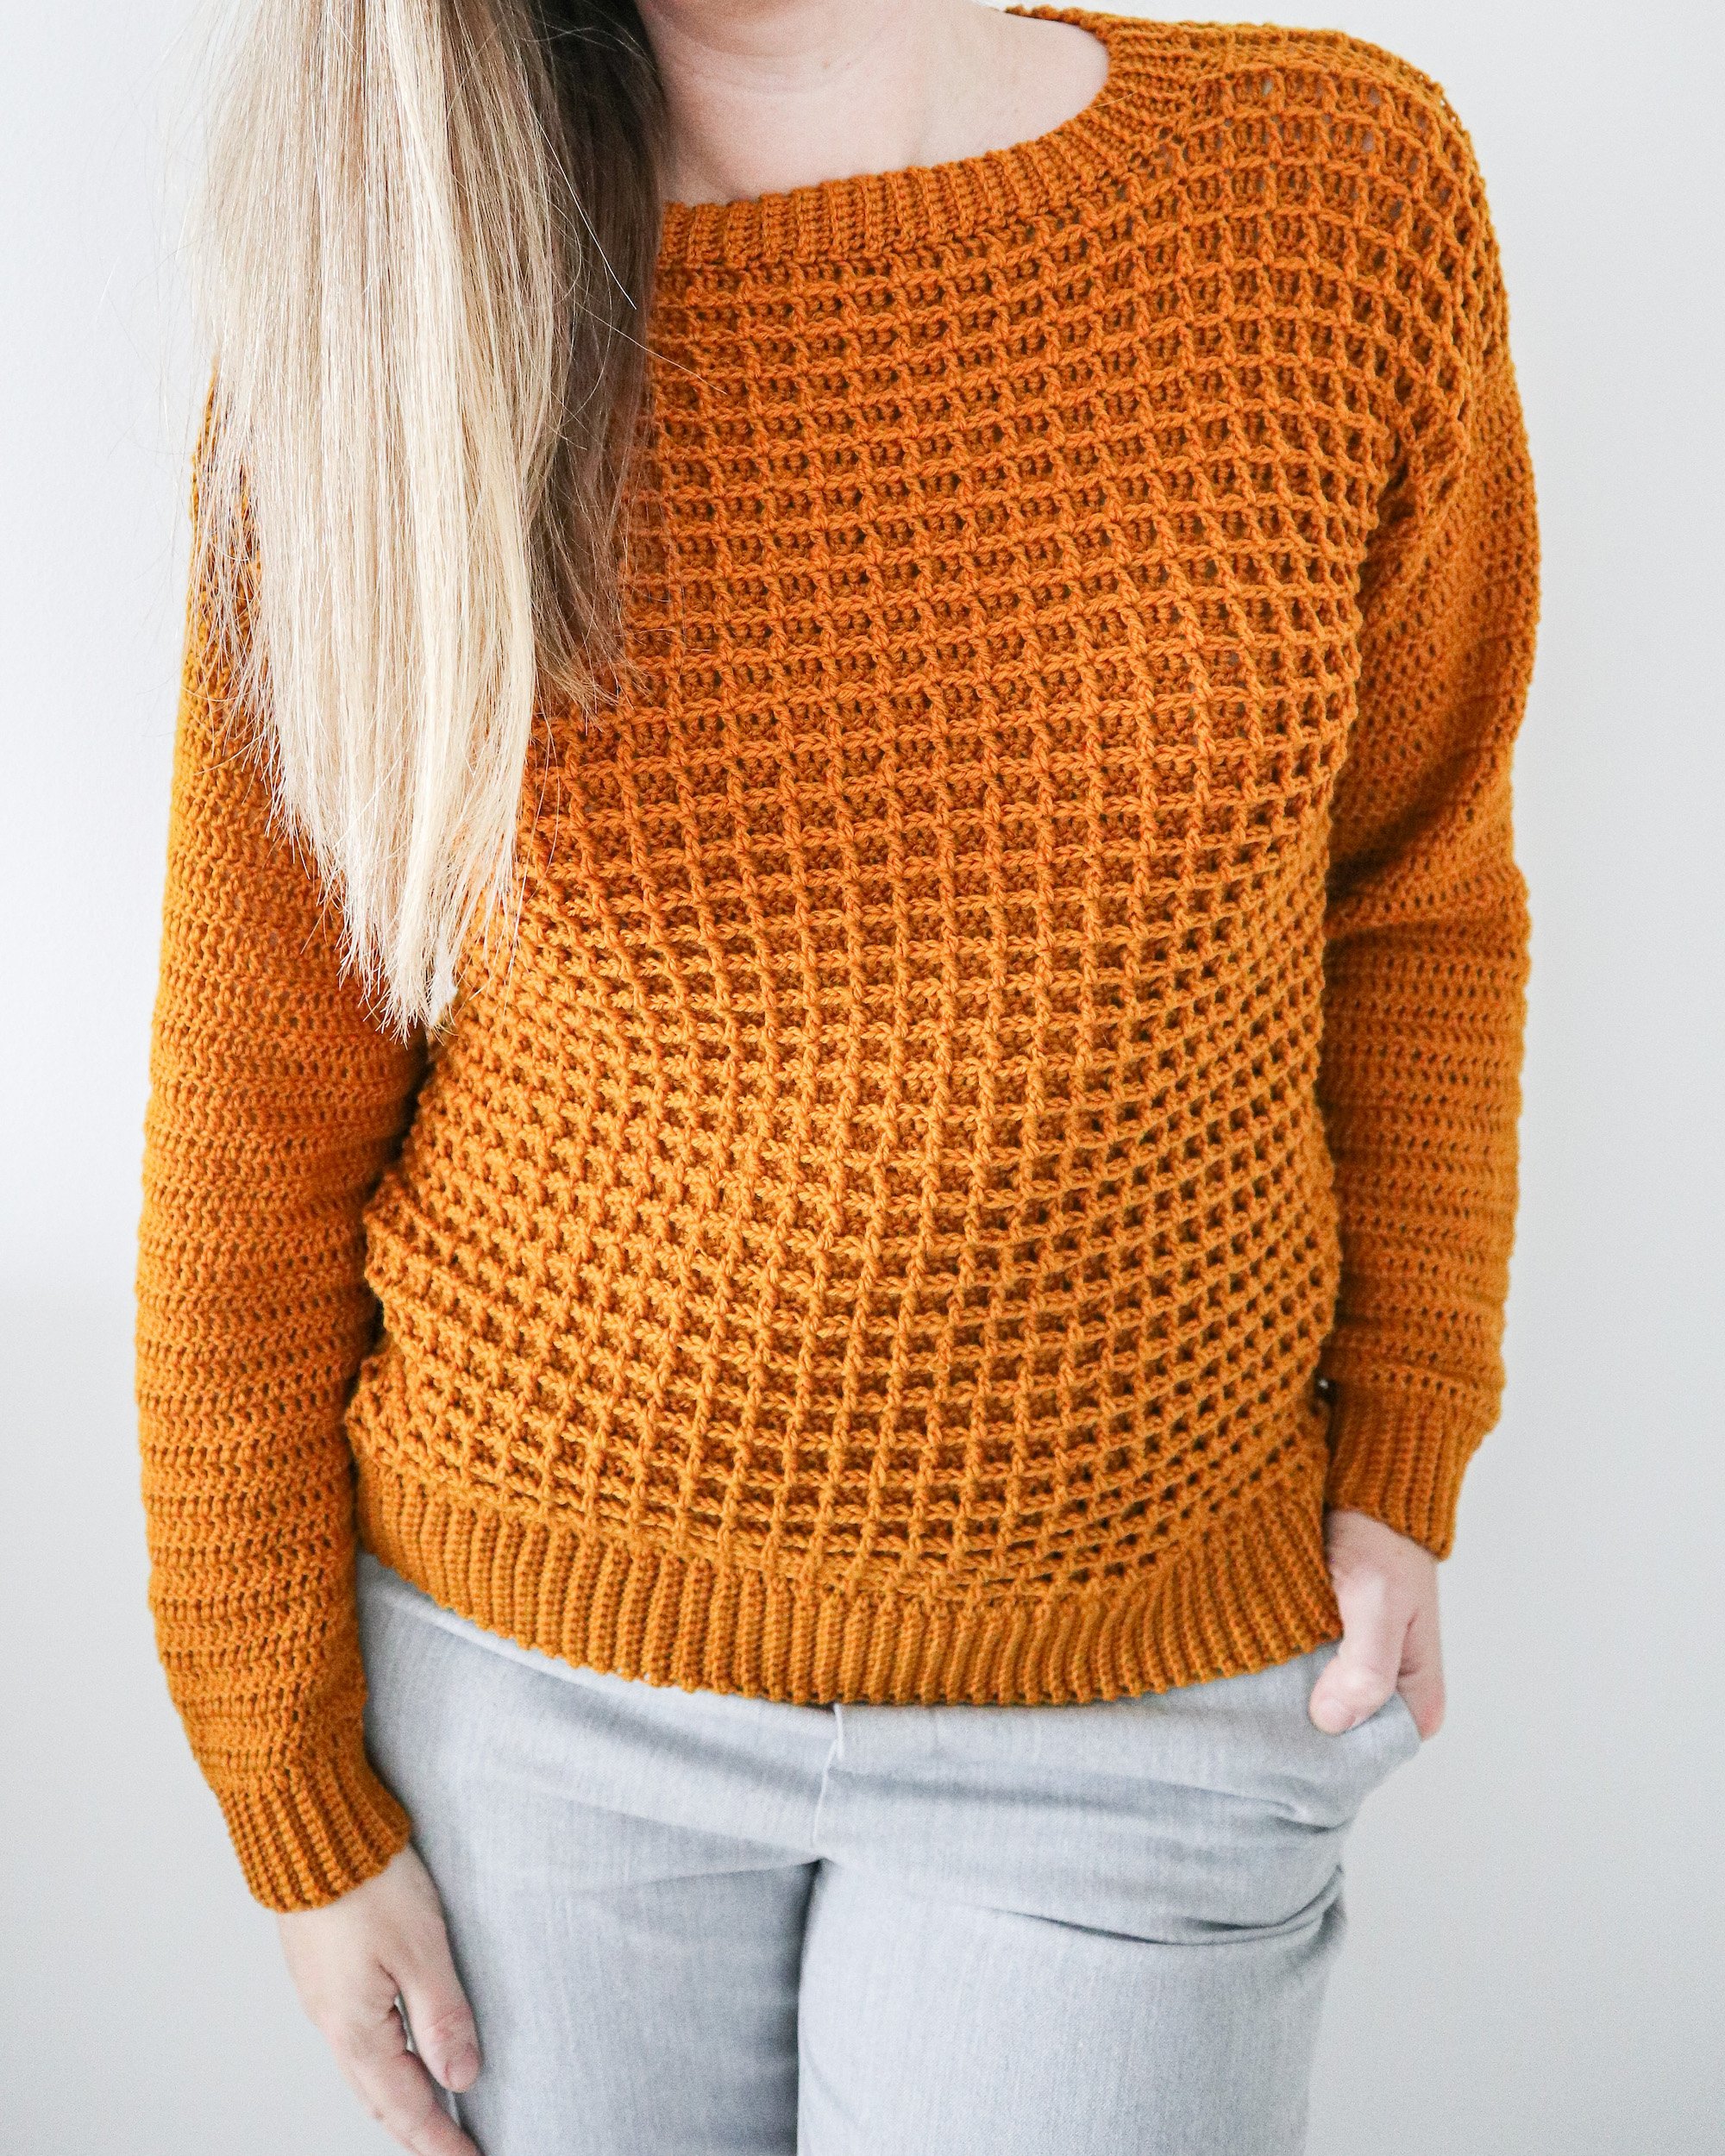 Crochet Pattern x Monday Morning Sweater — Coffee & Crocheting